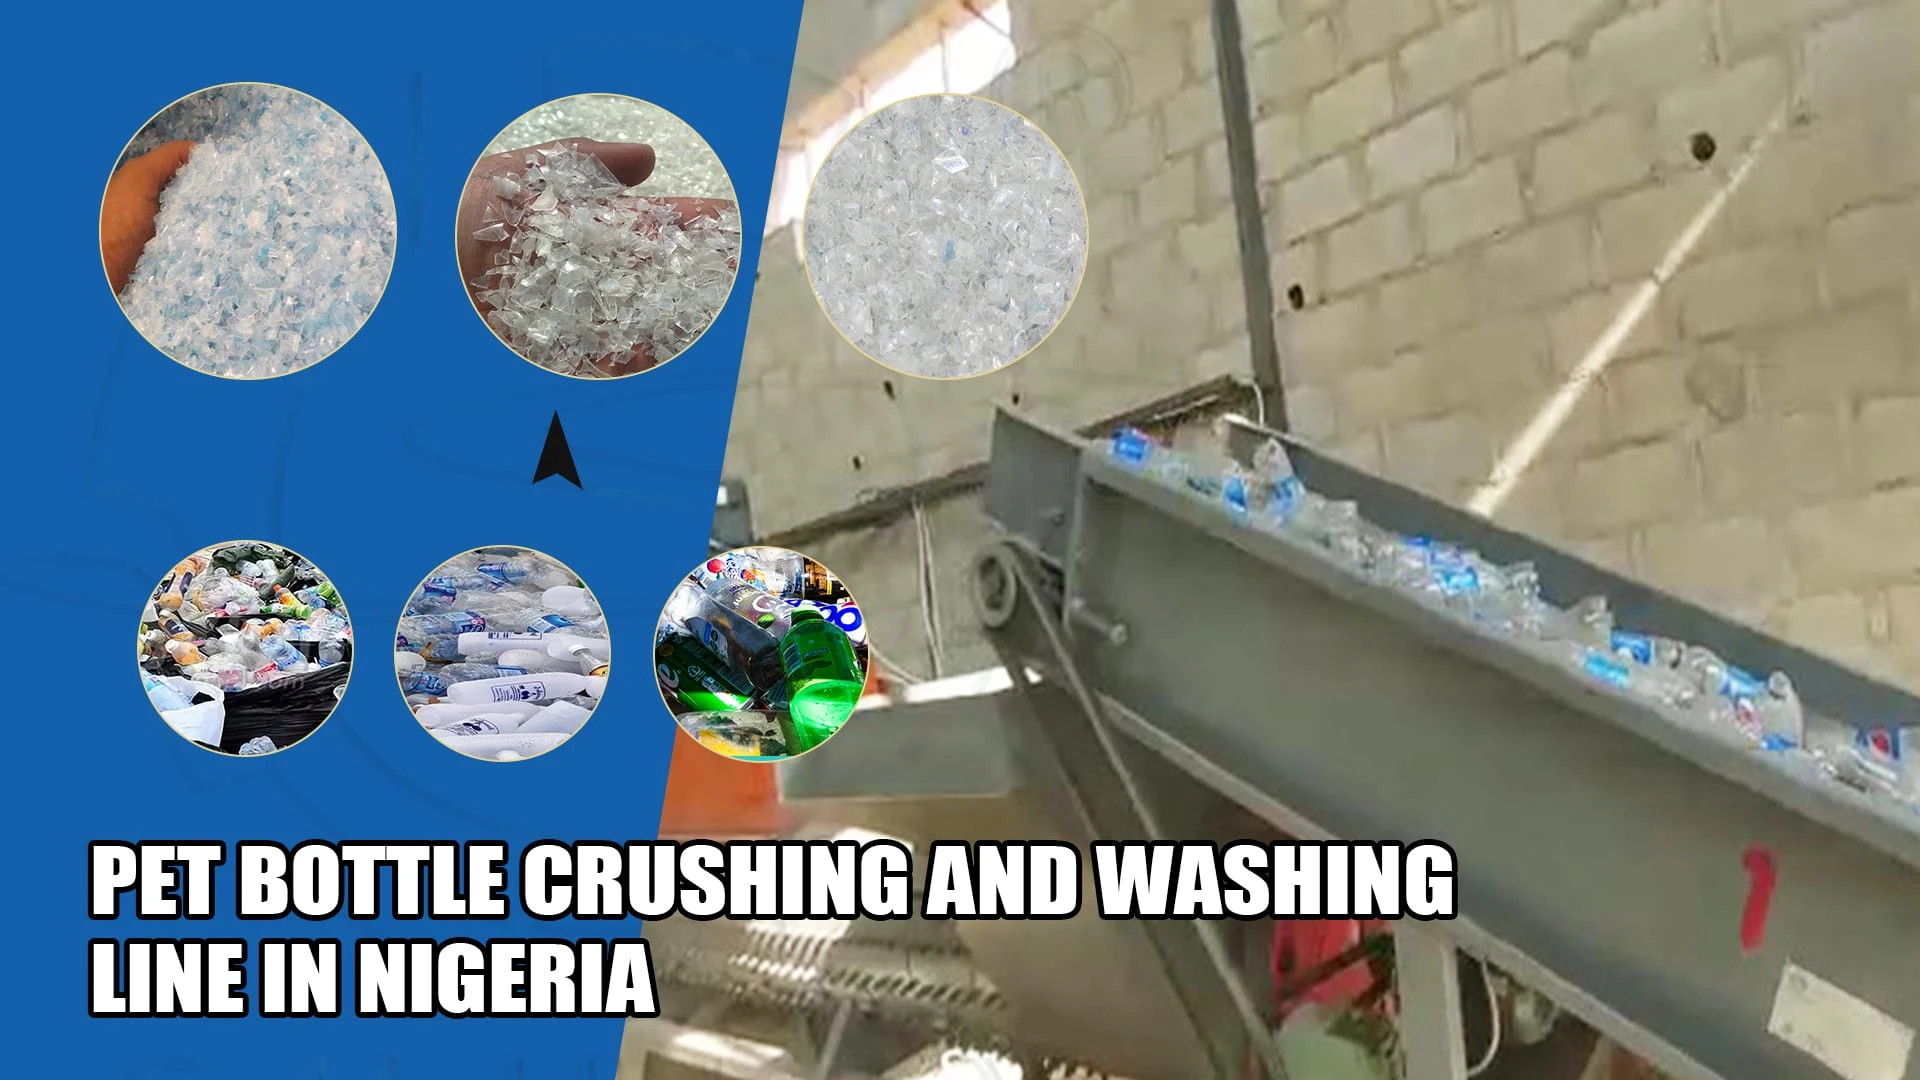 Линия дробления и промывки ПЭТ-бутылок в Нигерии | Обратная связь с клиентами